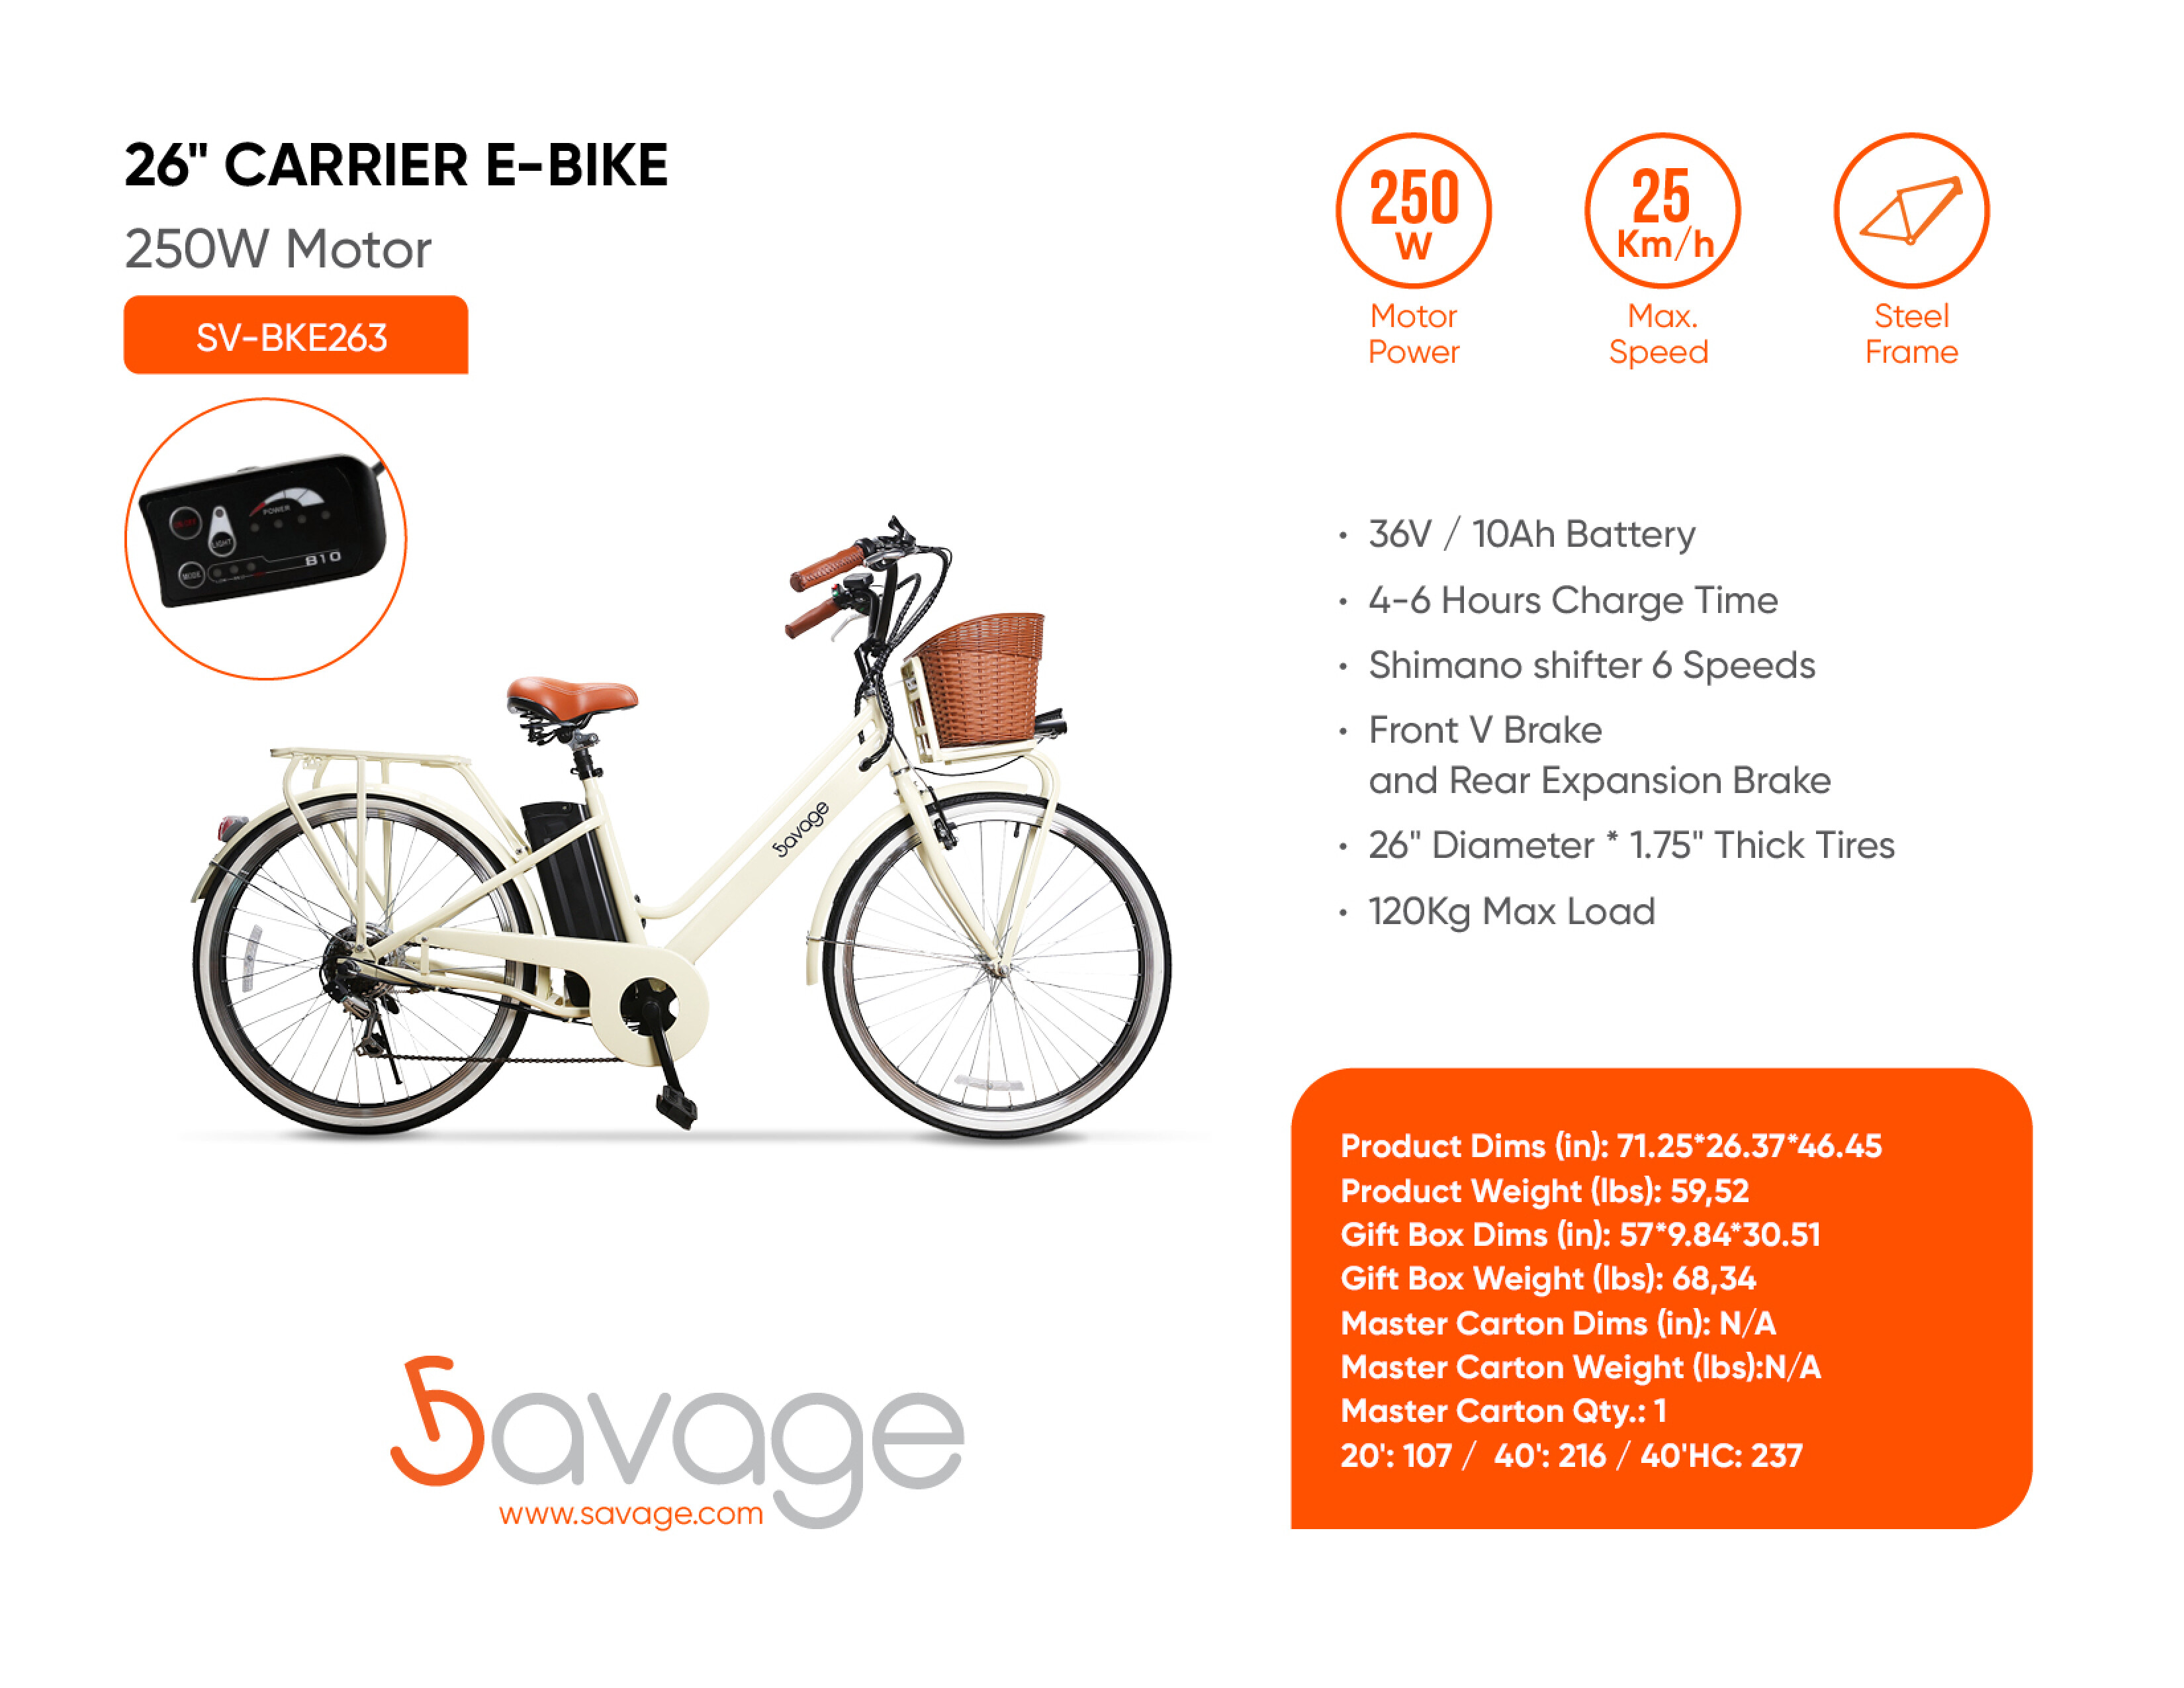 26" Carrier E-Bike